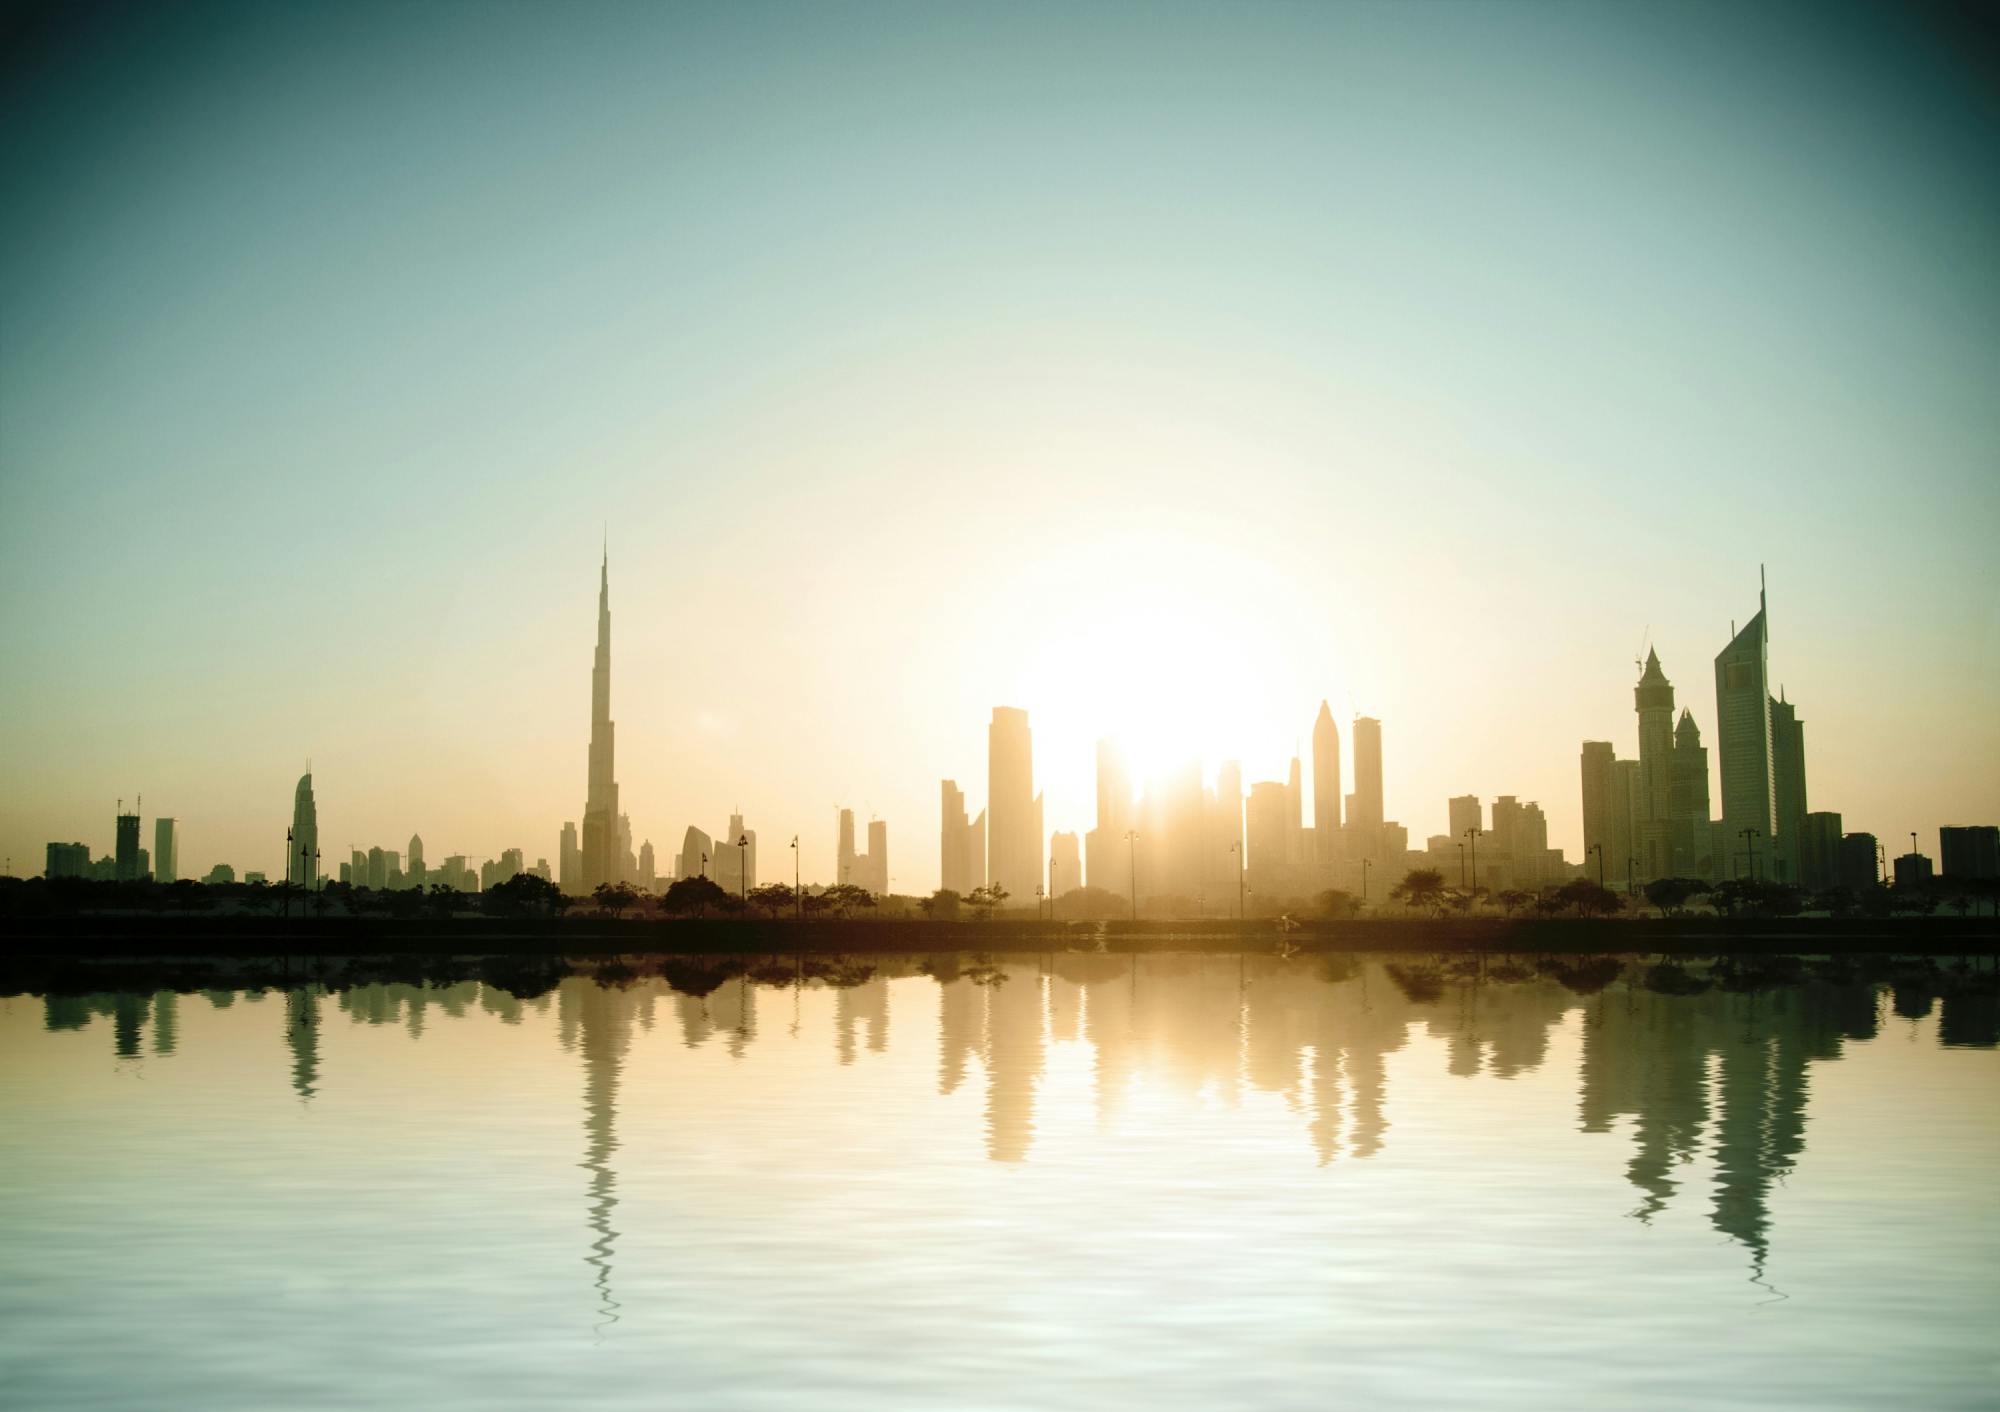 La ville de Dubaï propose une visite d'exploration d'une journée complète